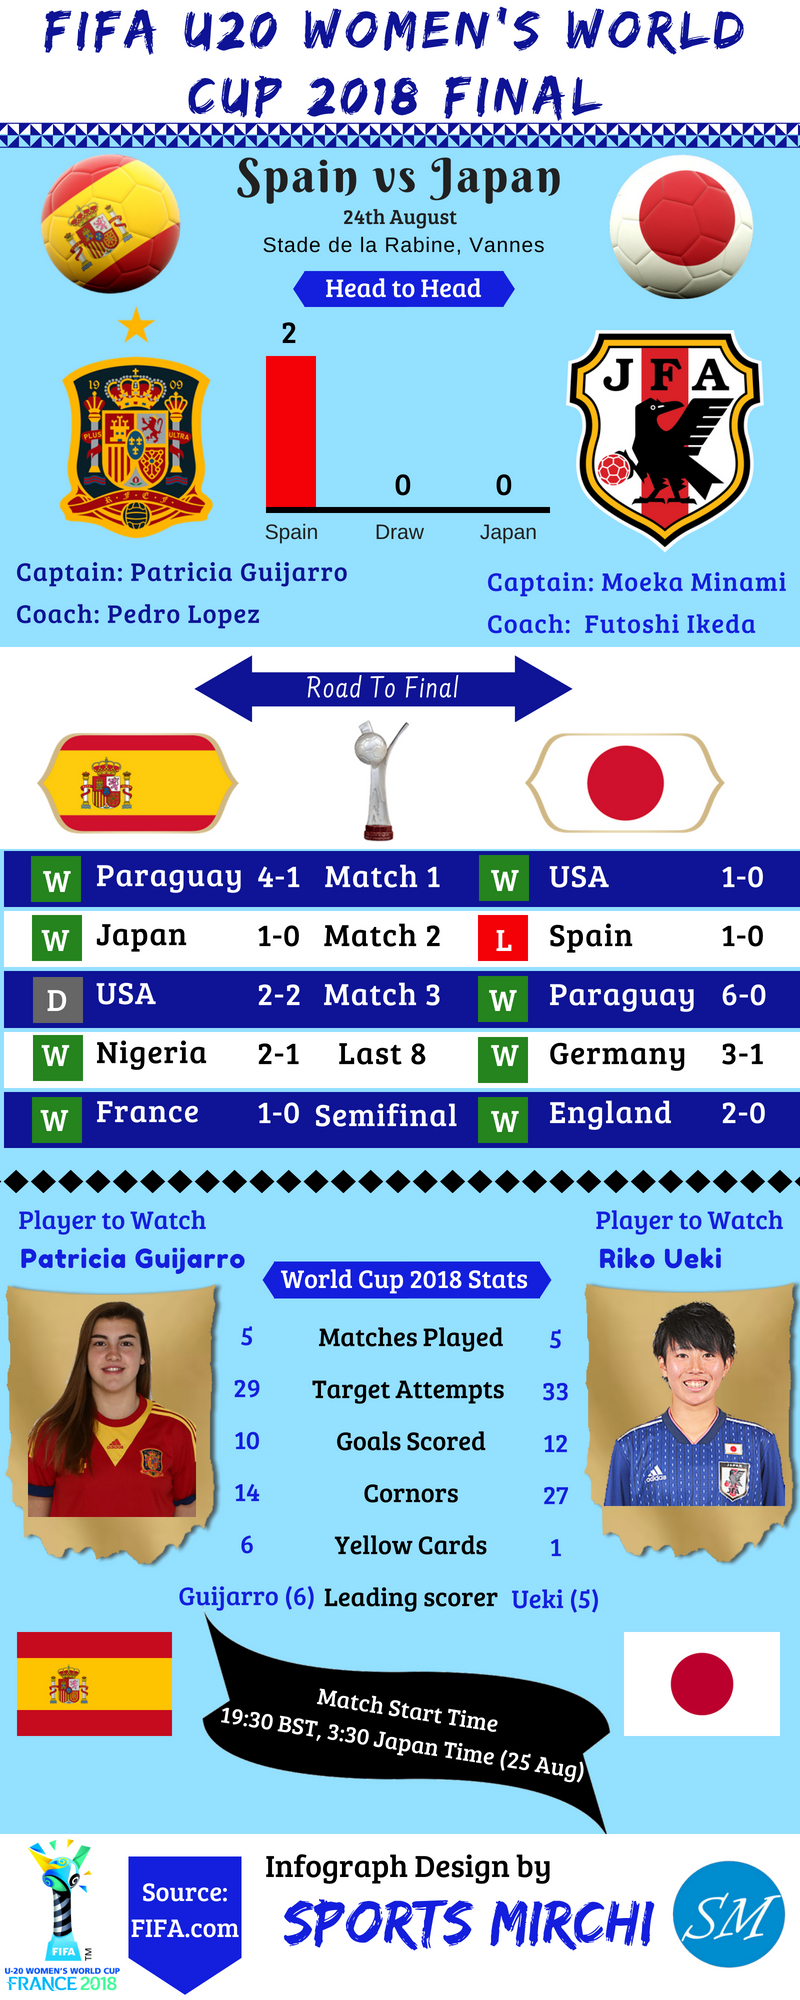 Spain vs Japan final 2018 FIFA women's U20 world cup